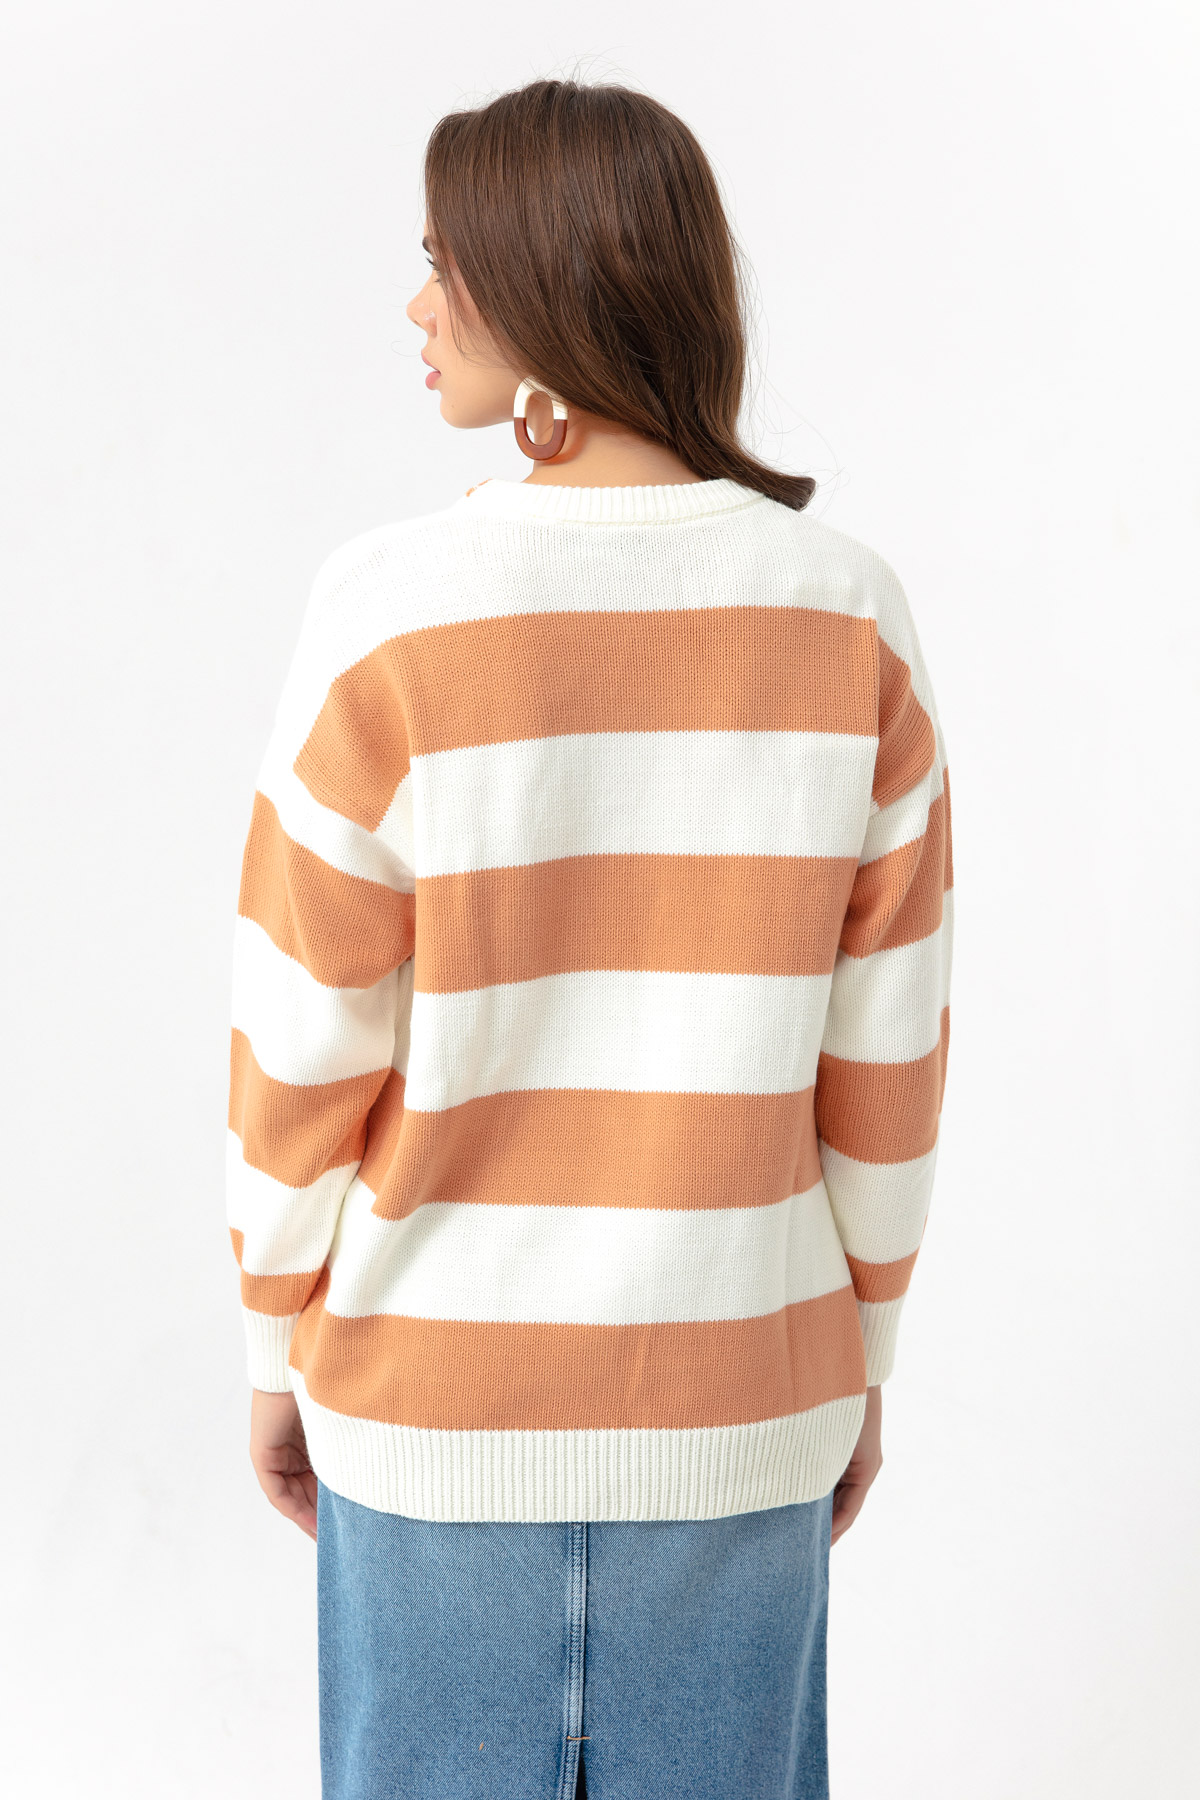 Women's Powder Striped Knitwear Sweater